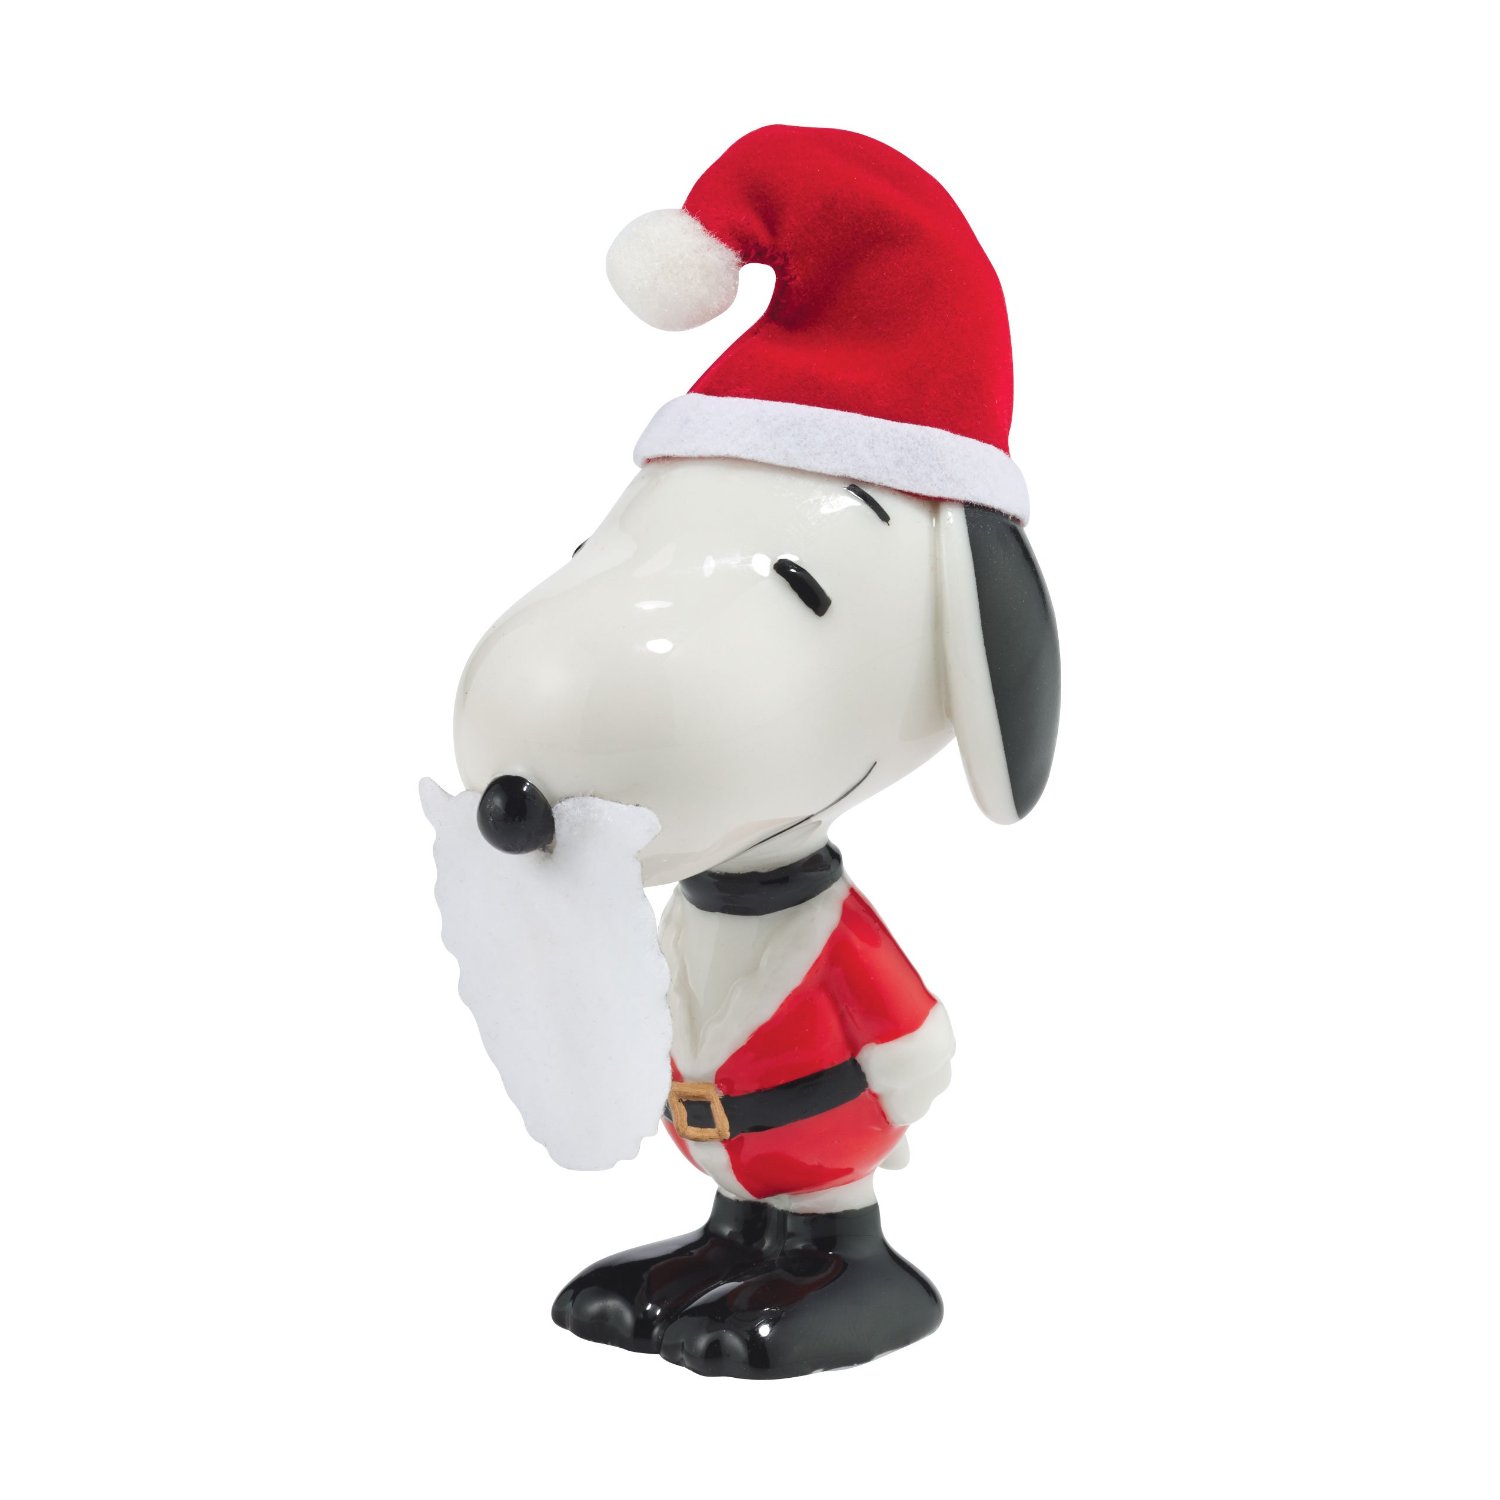 Peanuts - Christmas Santa Snoopy Figurine